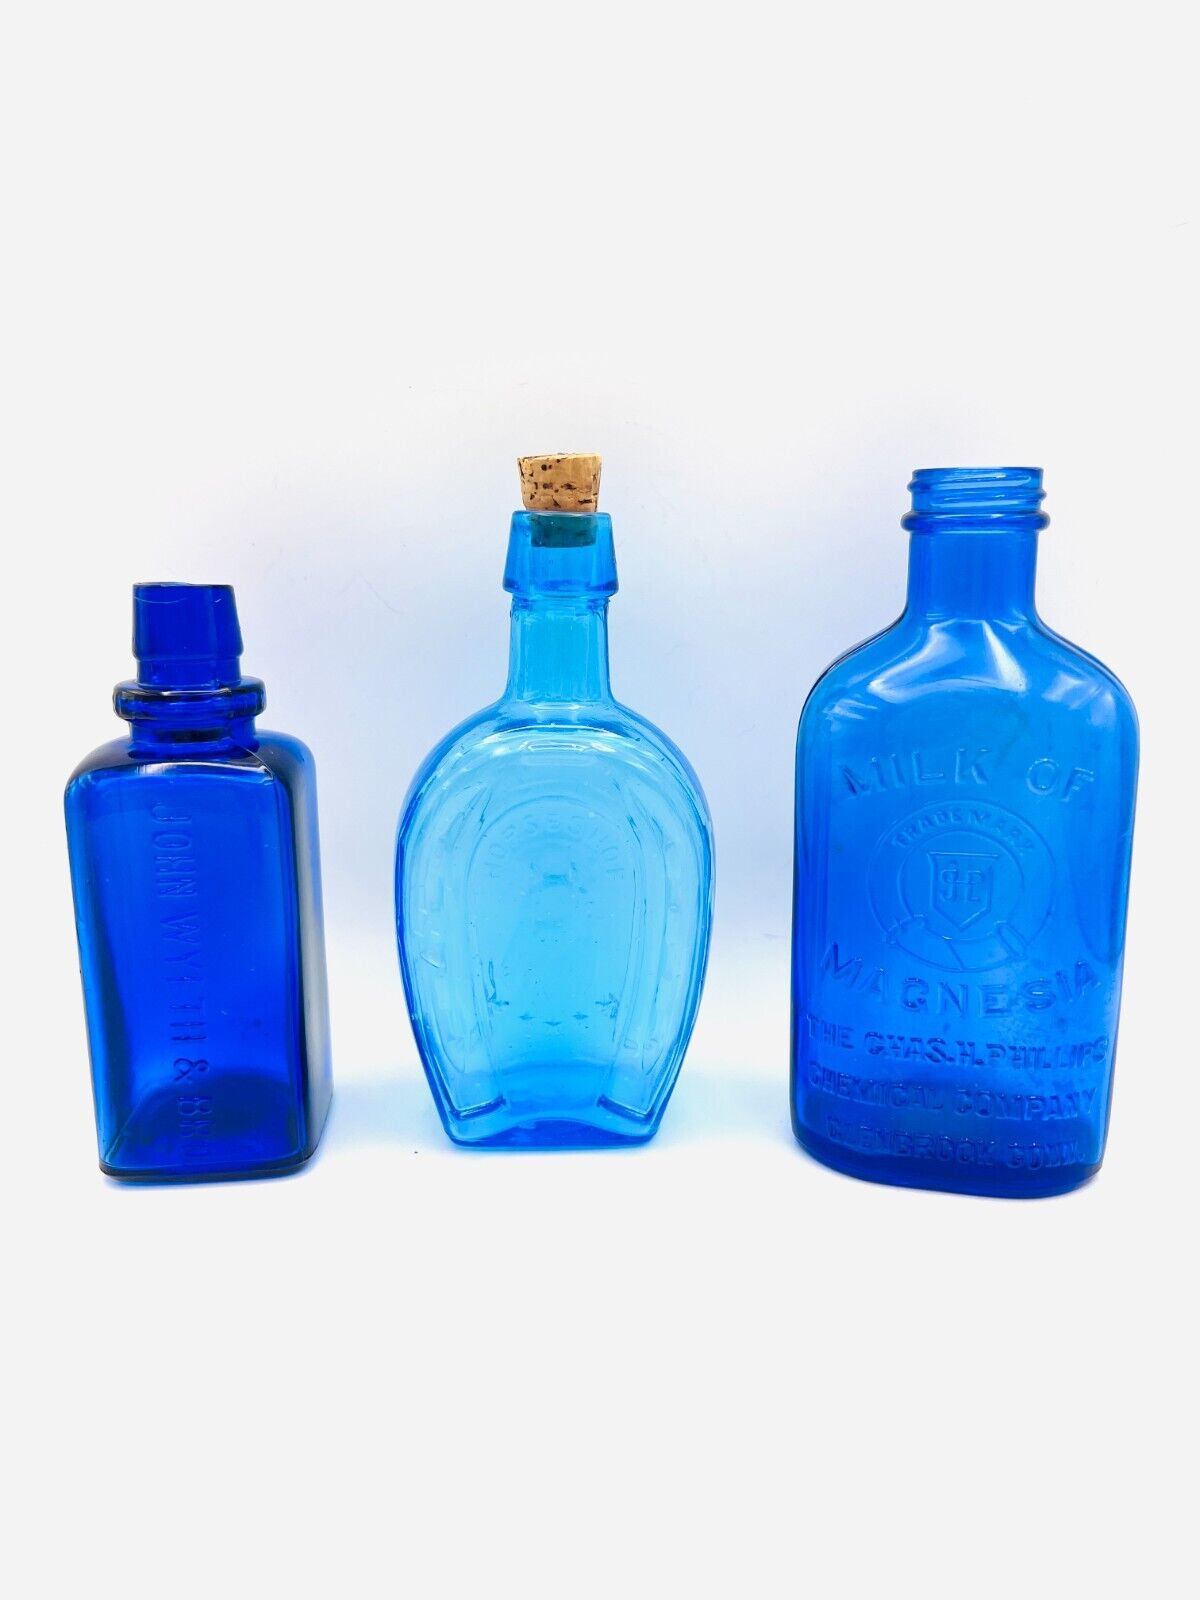 3 old/antique blue bottles: John Wyeth, Horseshoe, Milk of Magnesia